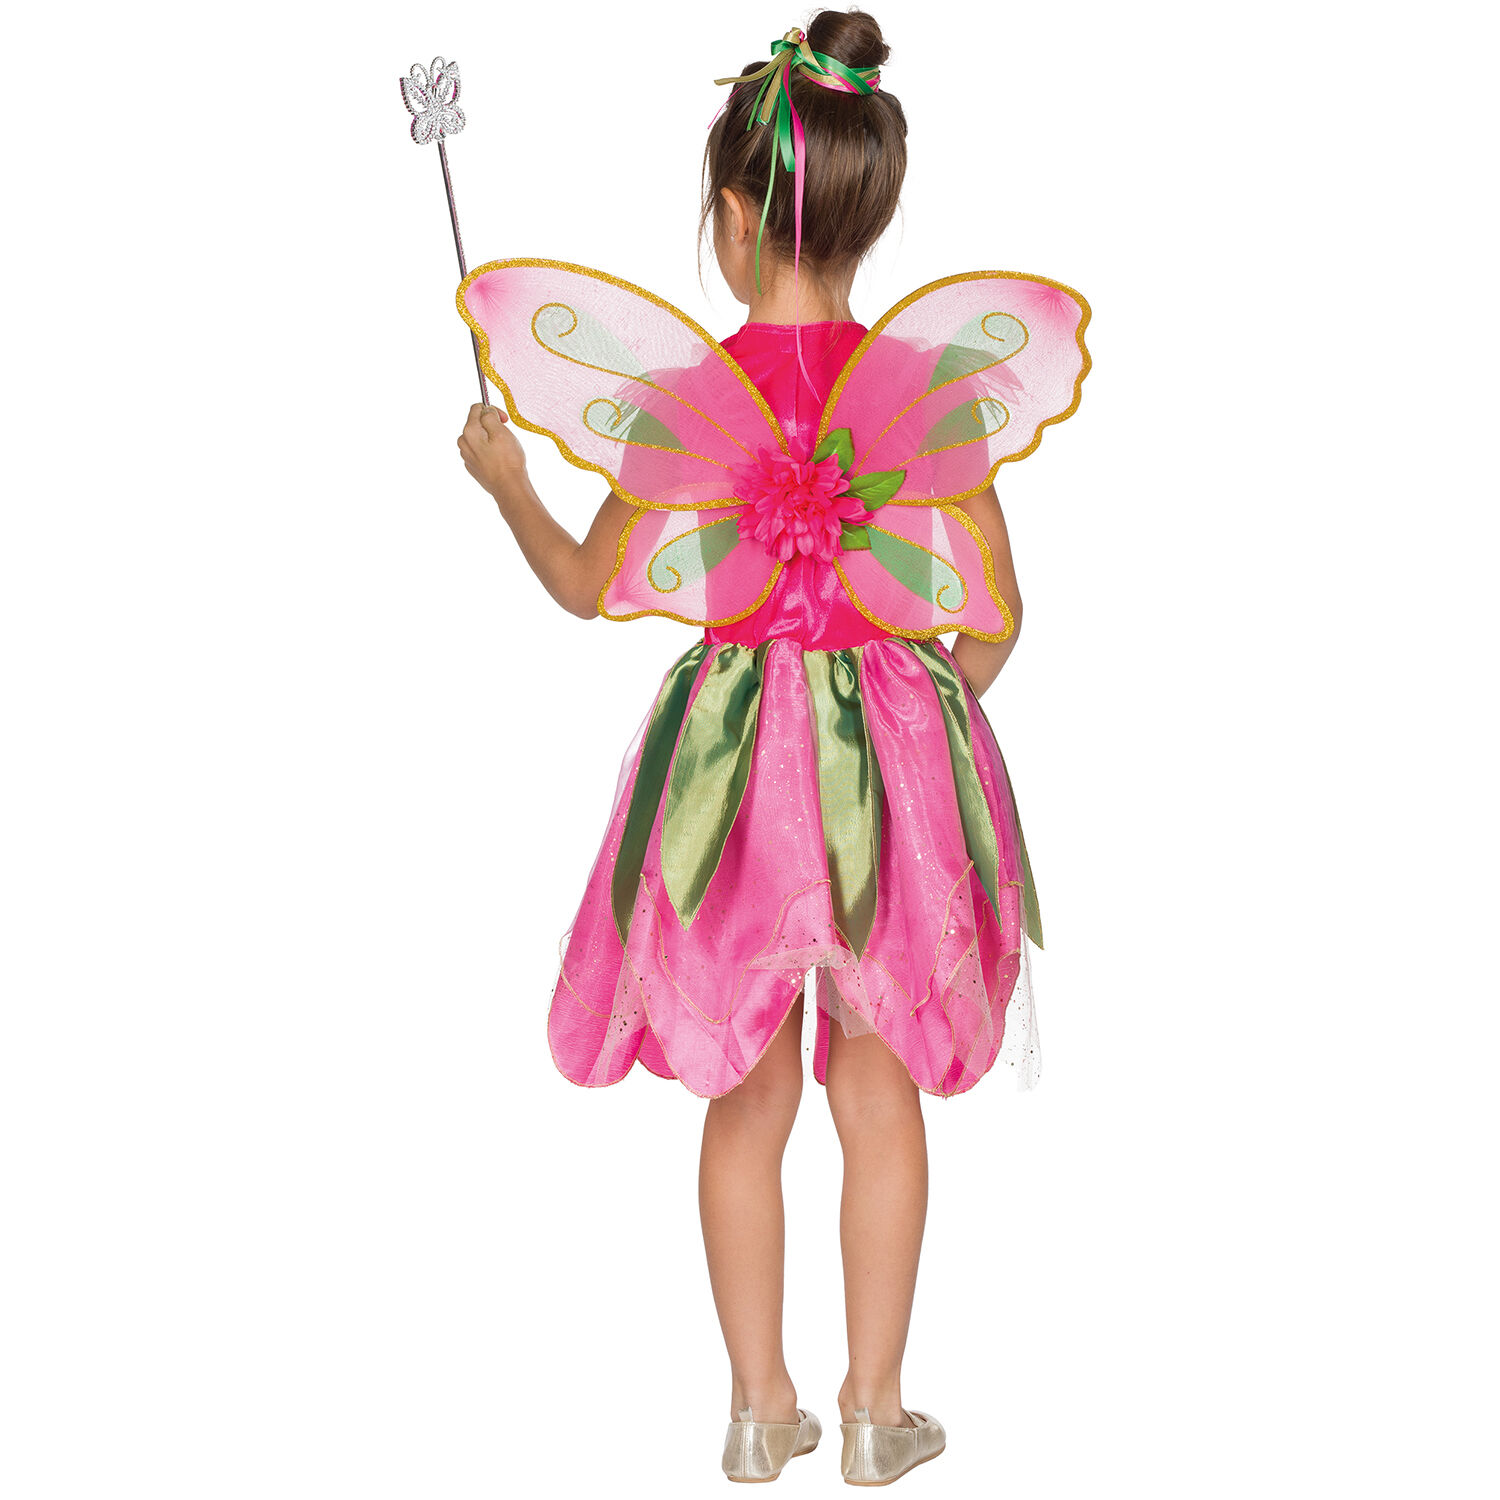 NEU Kinder-Kostüm Waldfee, Kleid mit Flügeln, pink, Gr. 104 Bild 3